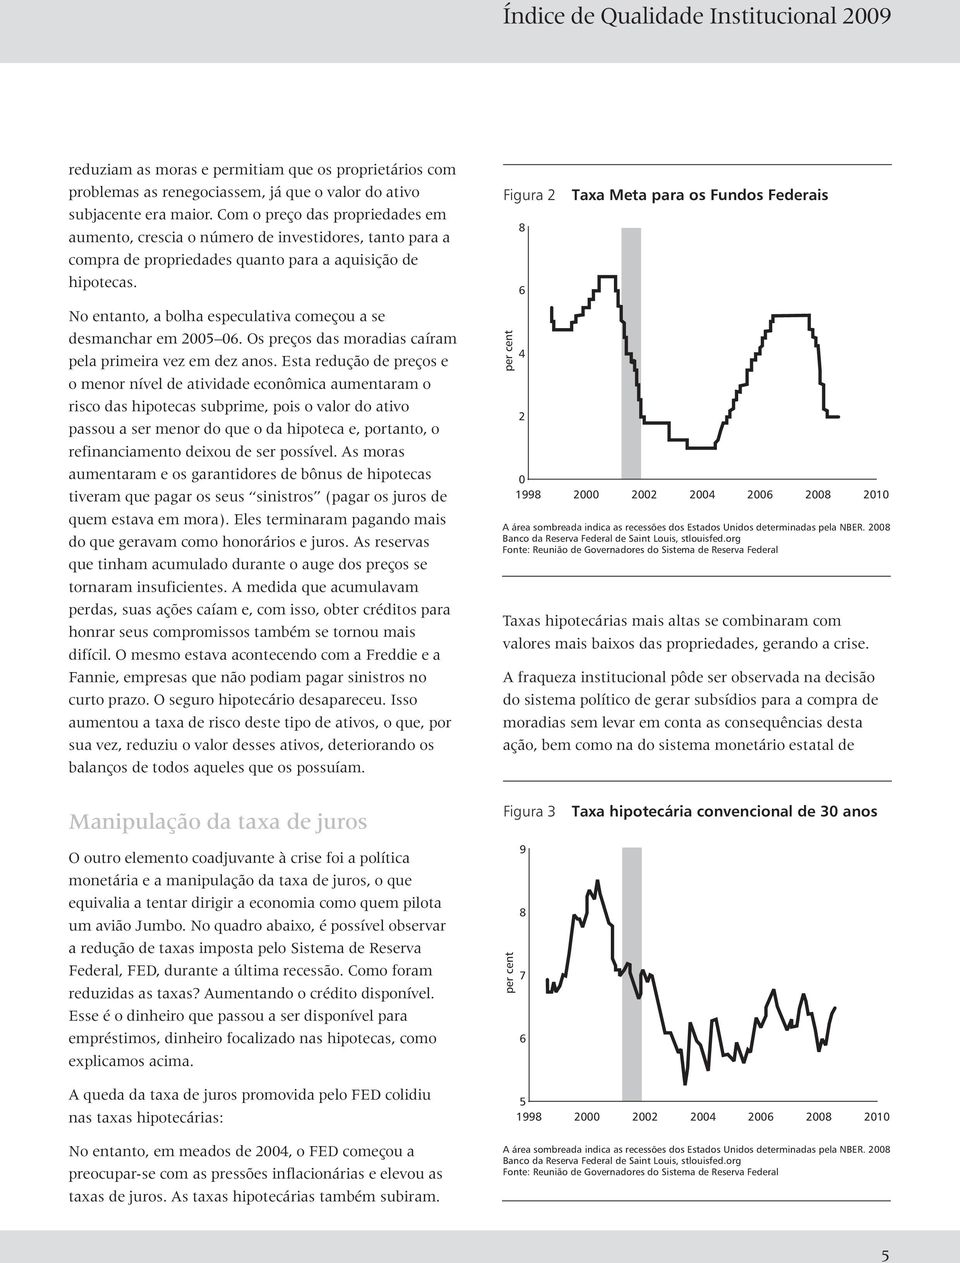 No entanto, a bolha especulativa começou a se desmanchar em 2005 06. Os preços das moradias caíram pela primeira vez em dez anos.